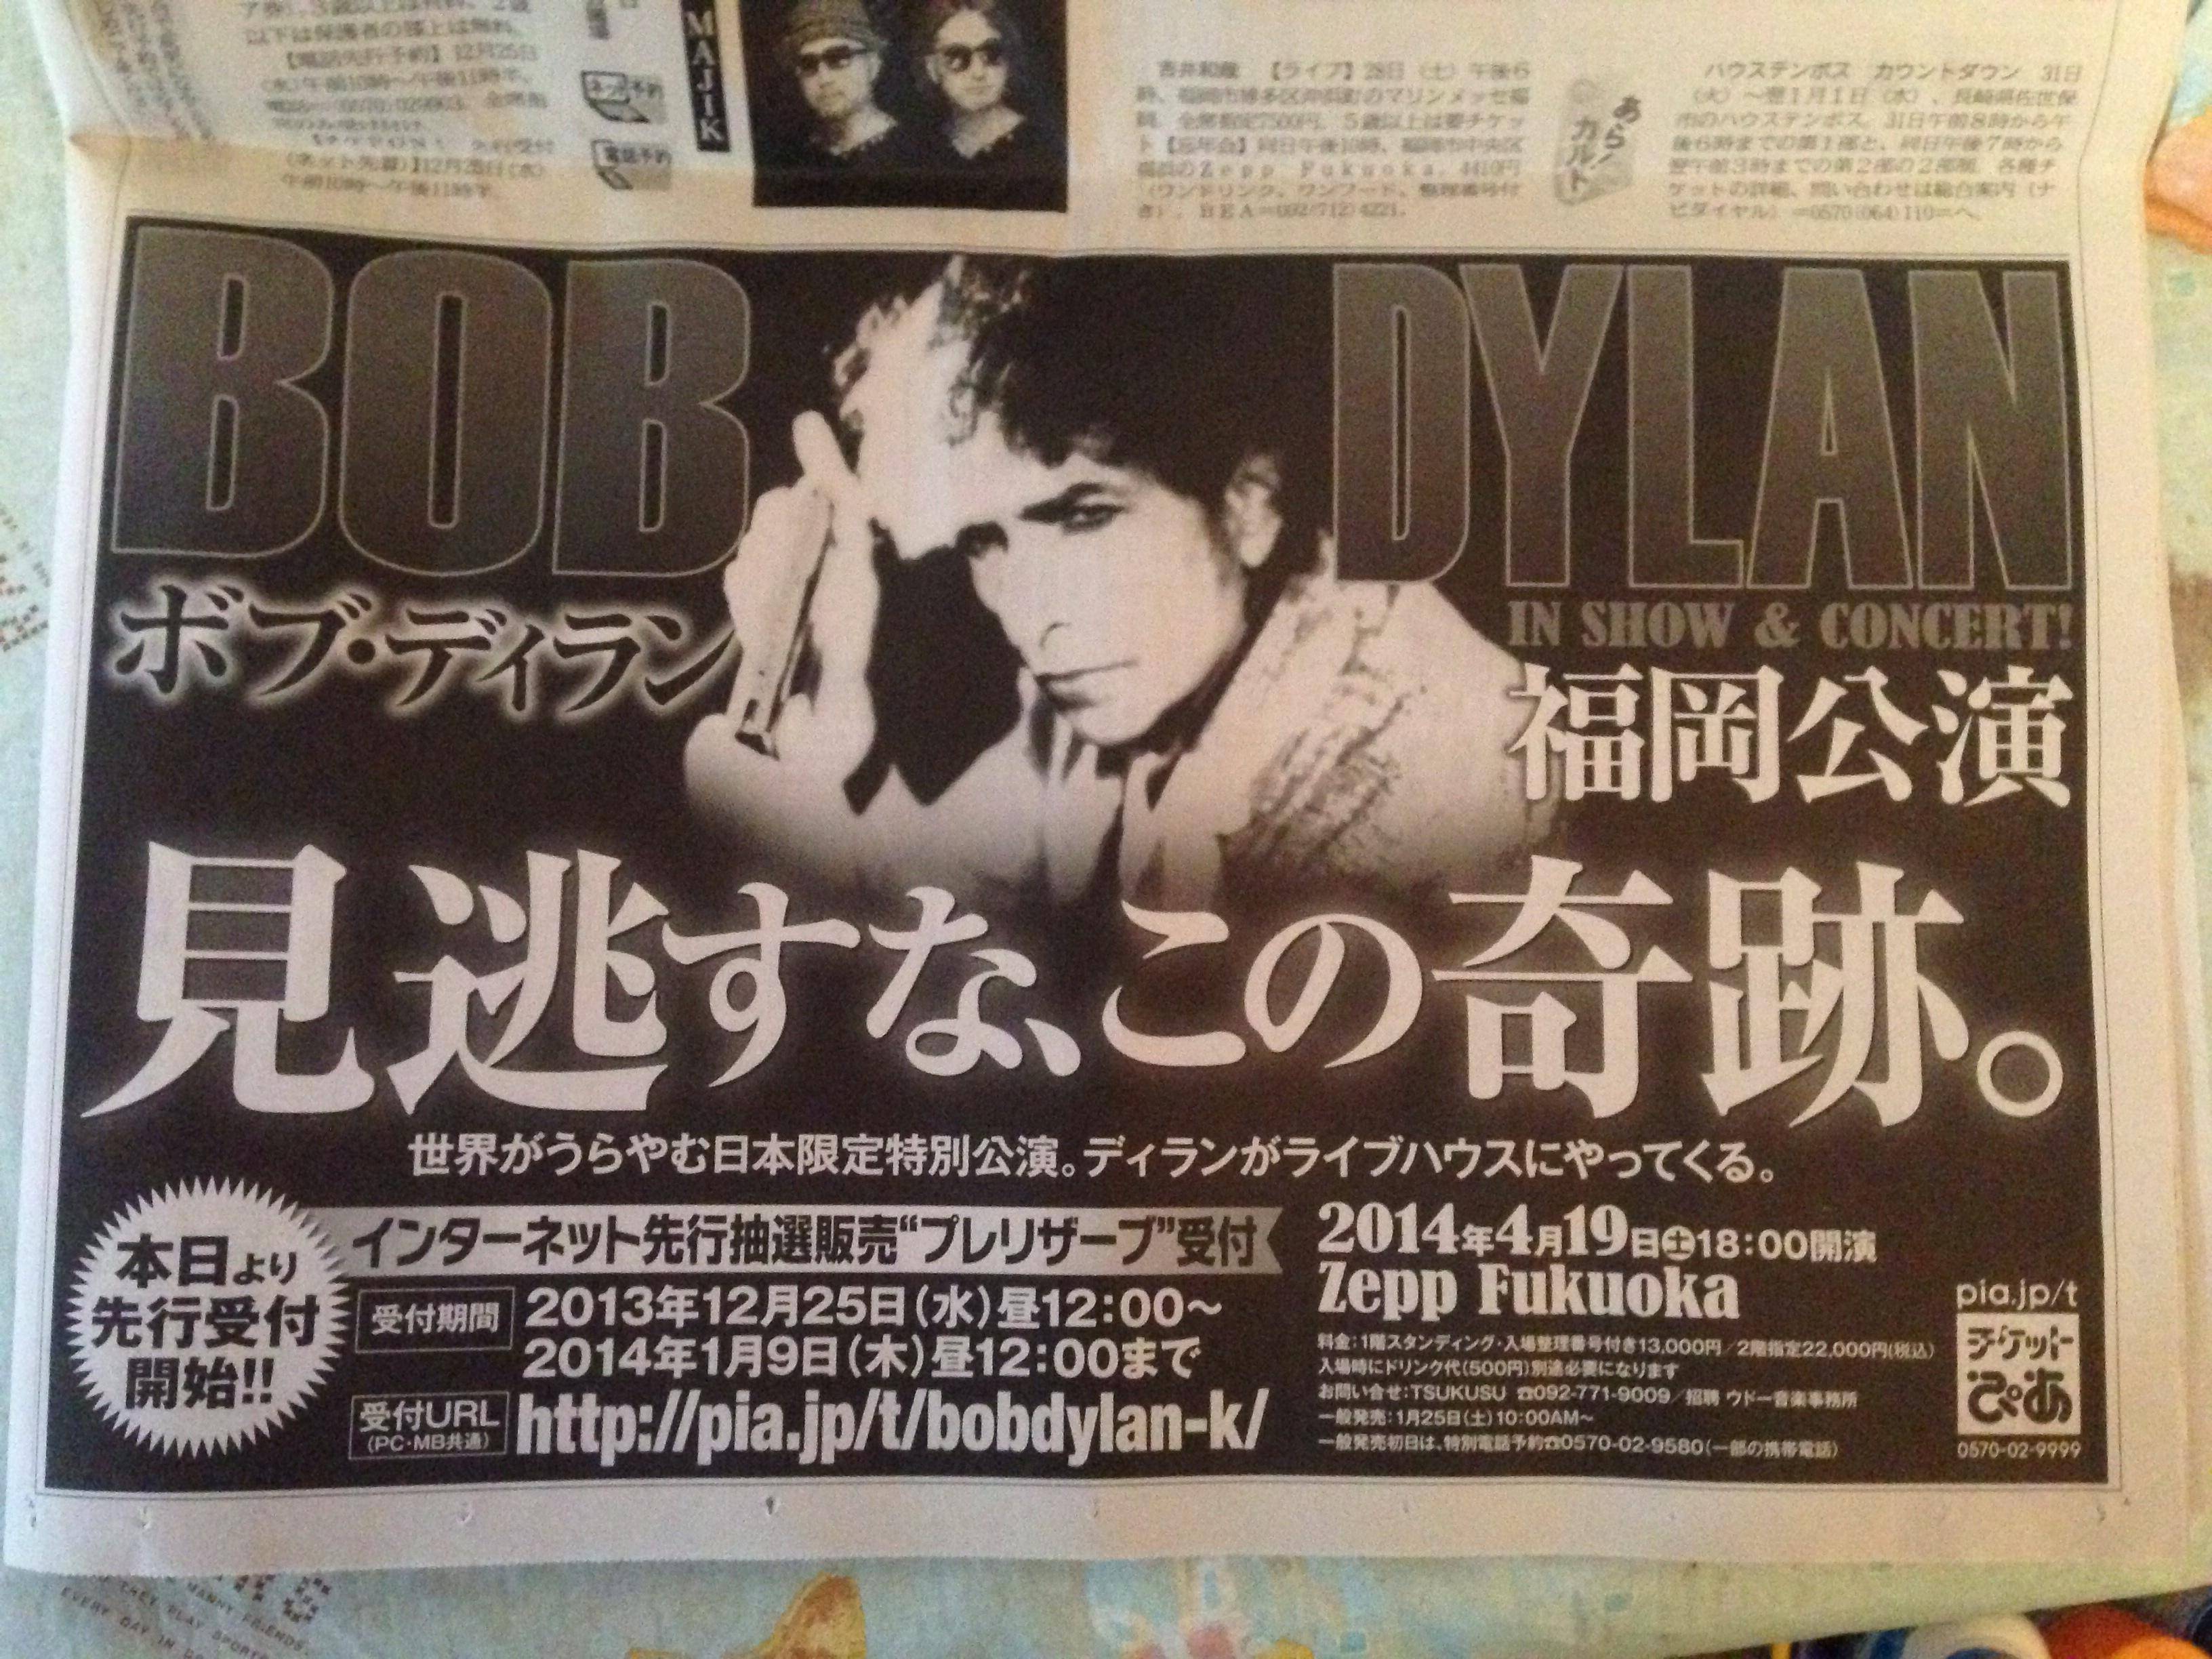 2013/12/25 Fukuoka ad